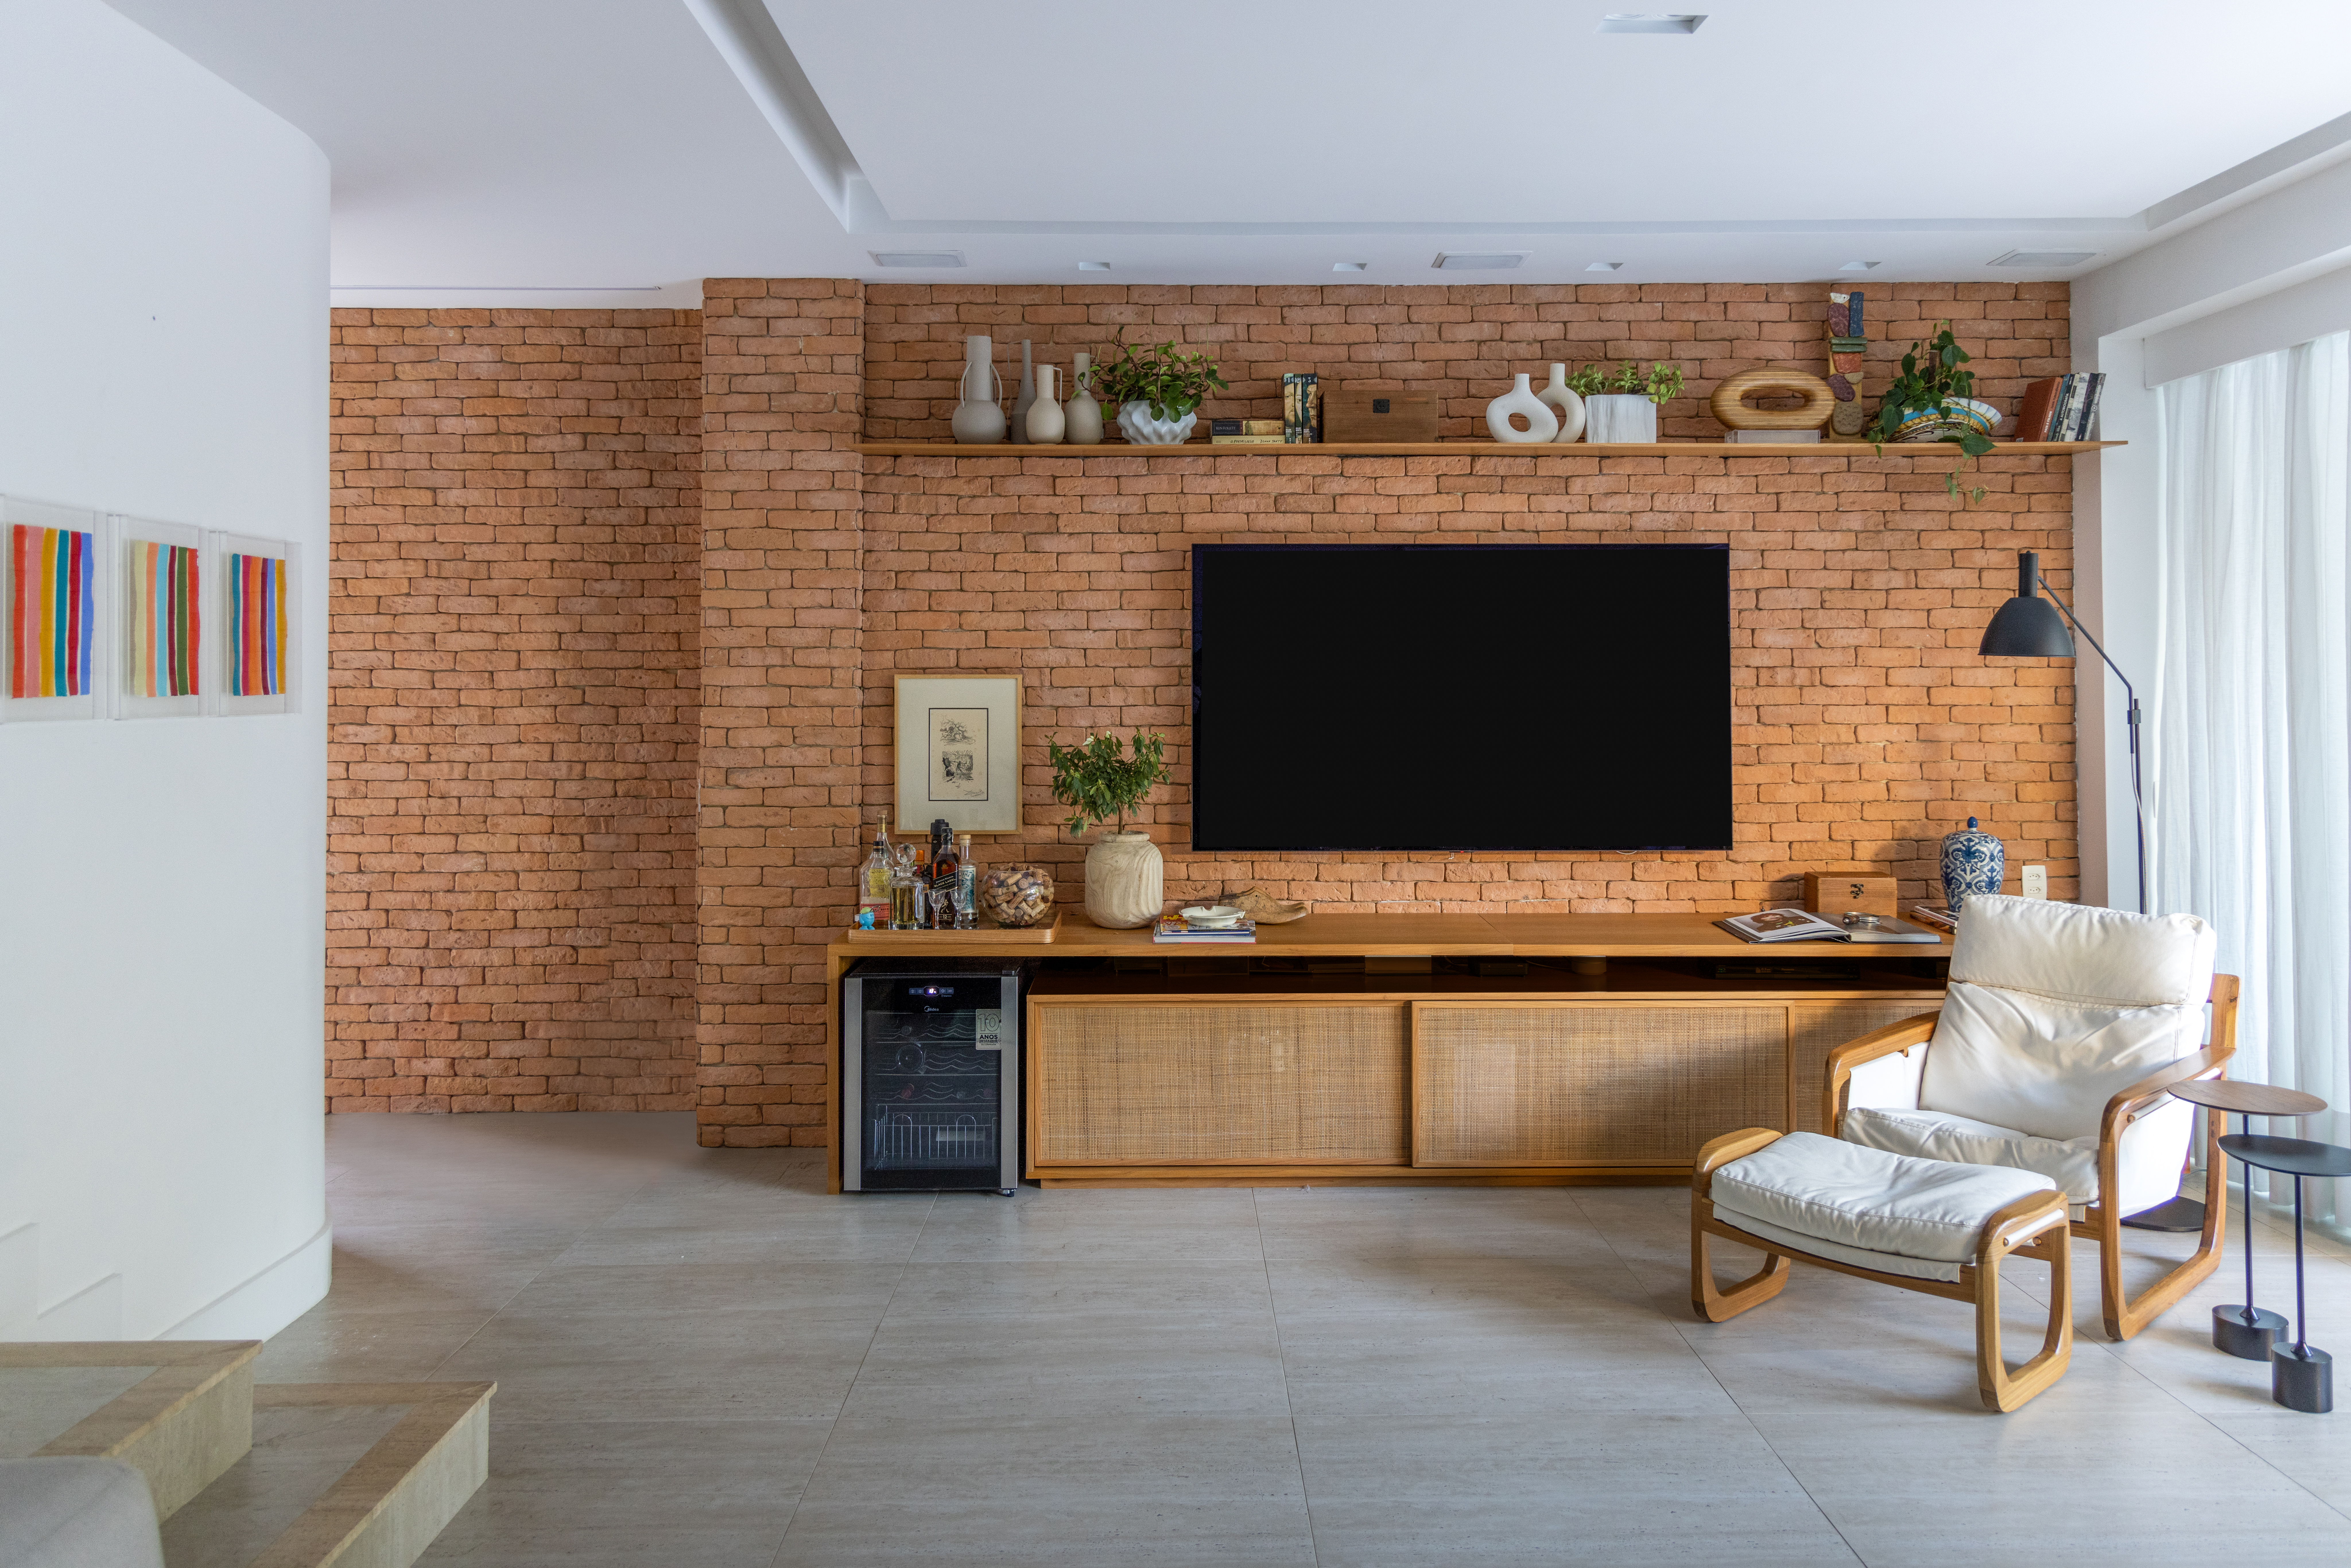 Projeto de Manuela Santos. Na foto, sala de estar com parede de tijolinhos e rack de madeira.